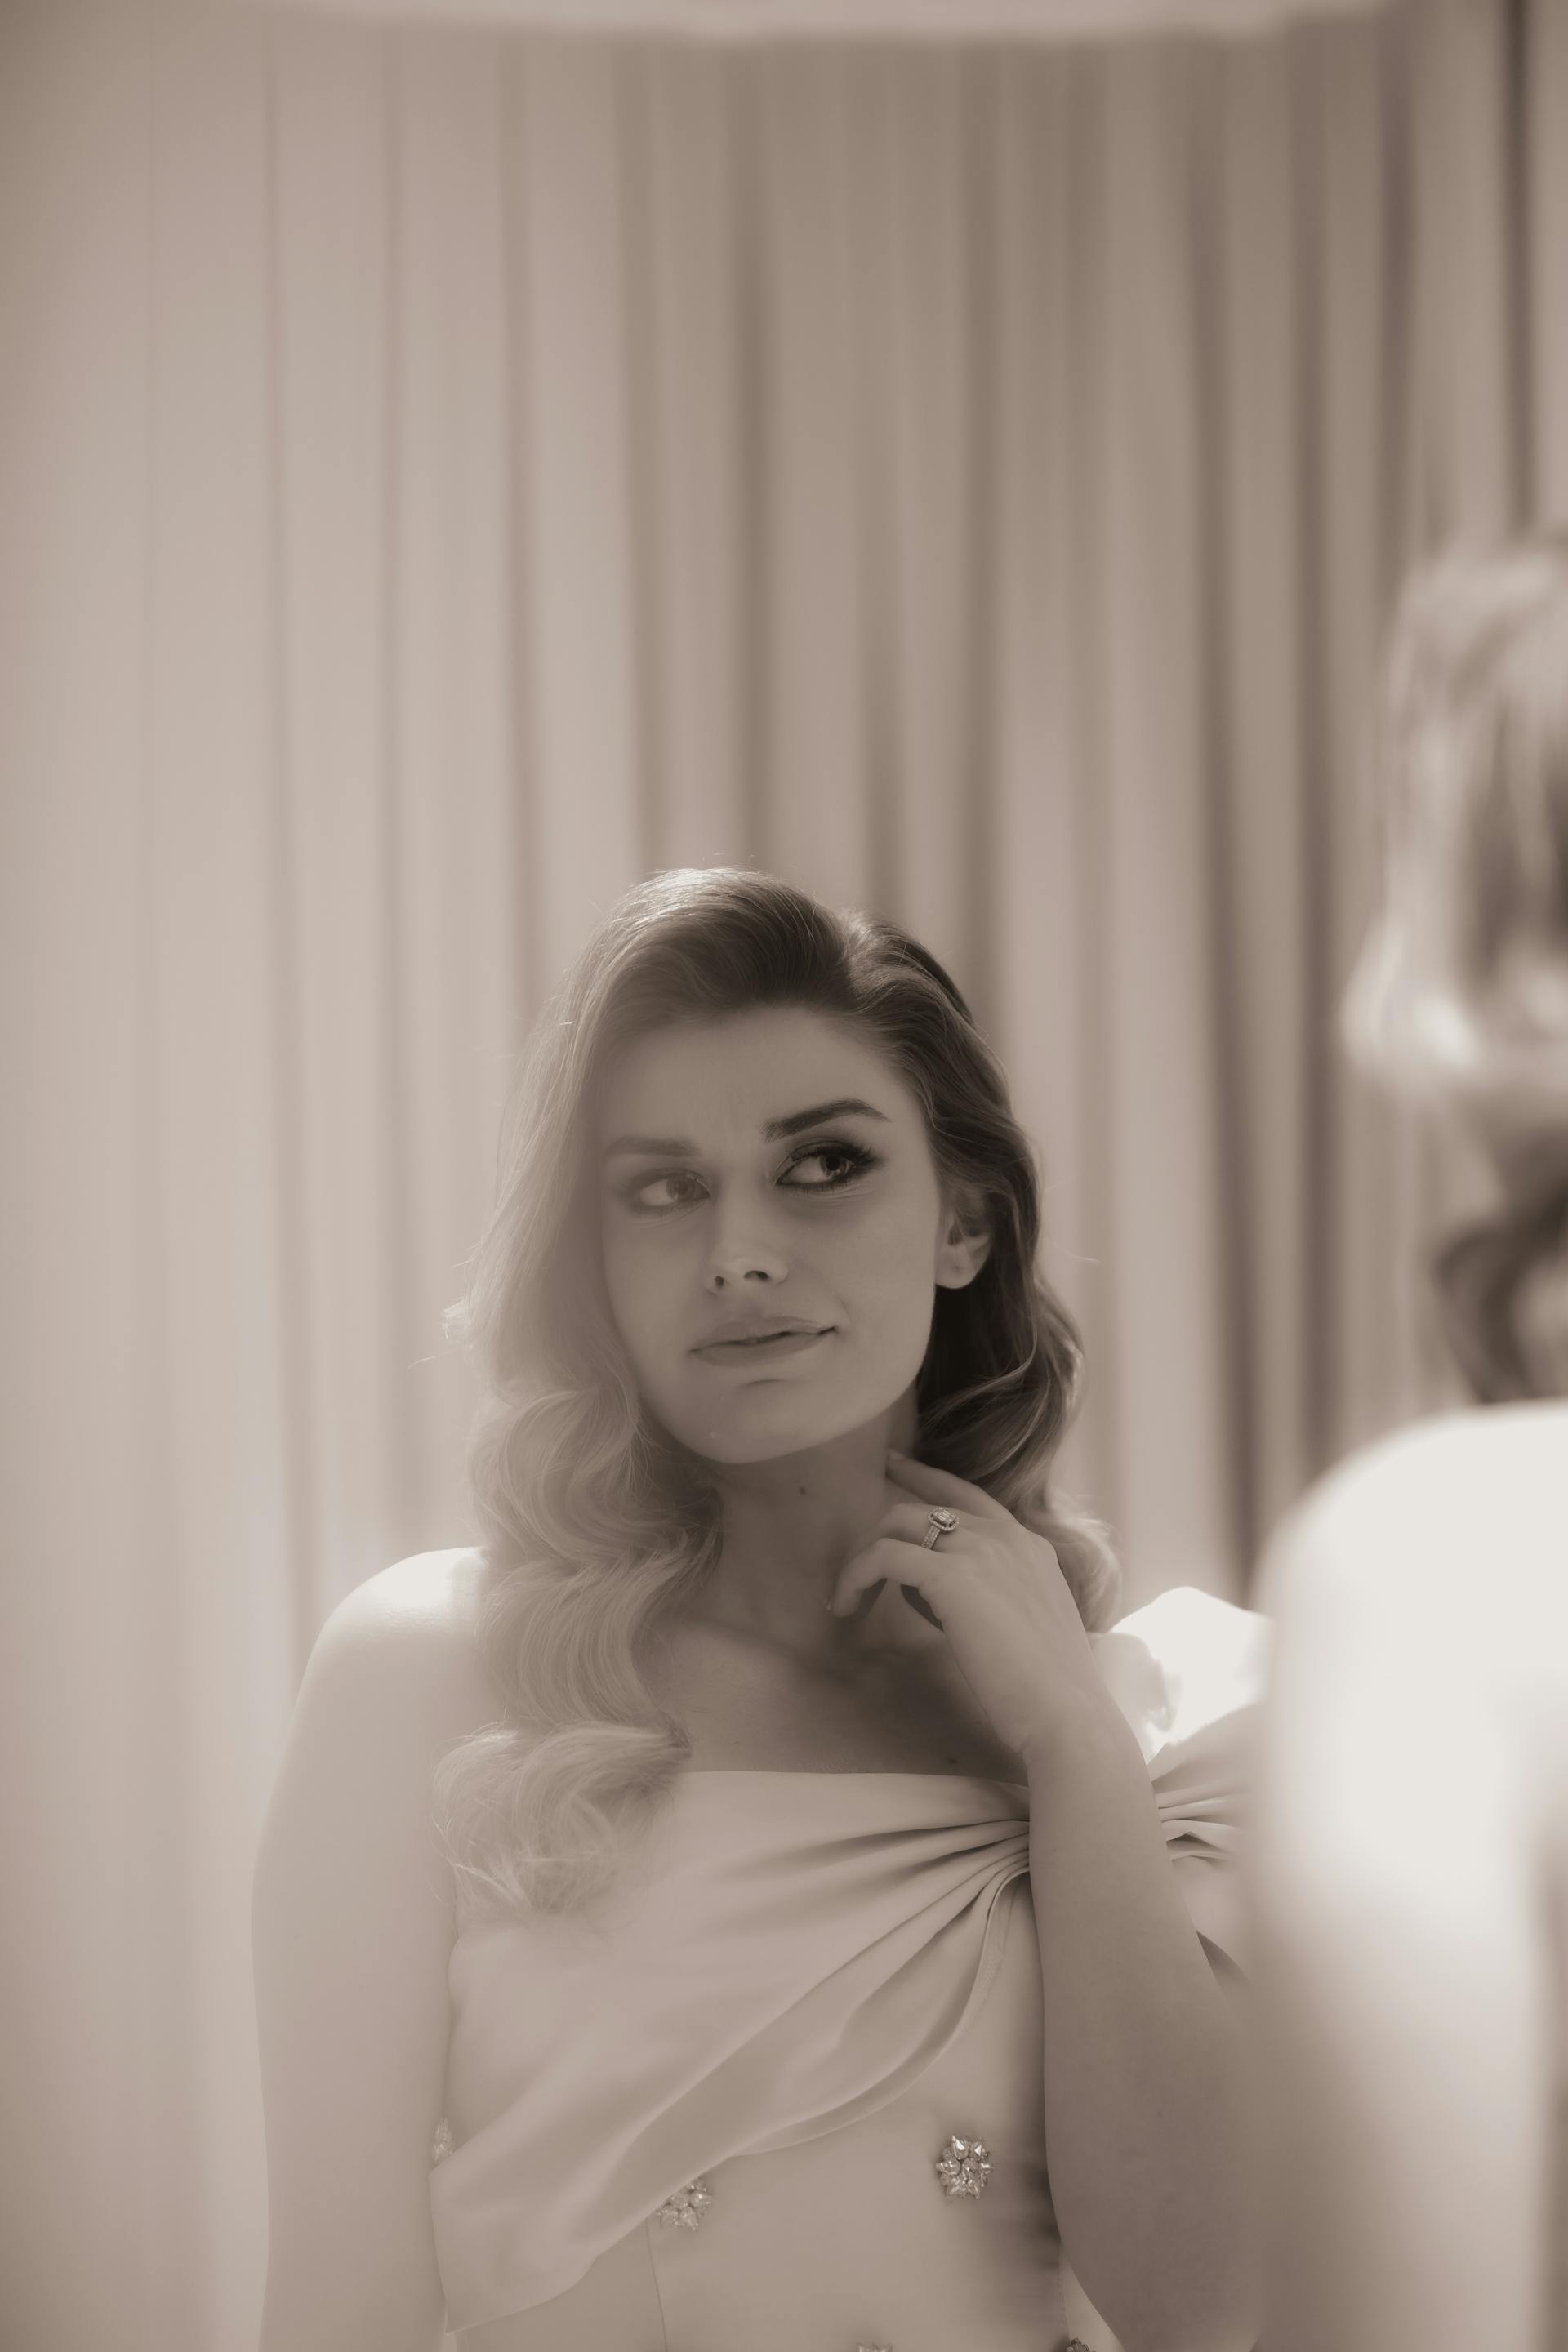 Une photo en niveaux de gris d'une mariée qui se regarde dans le miroir | Source : Pexels